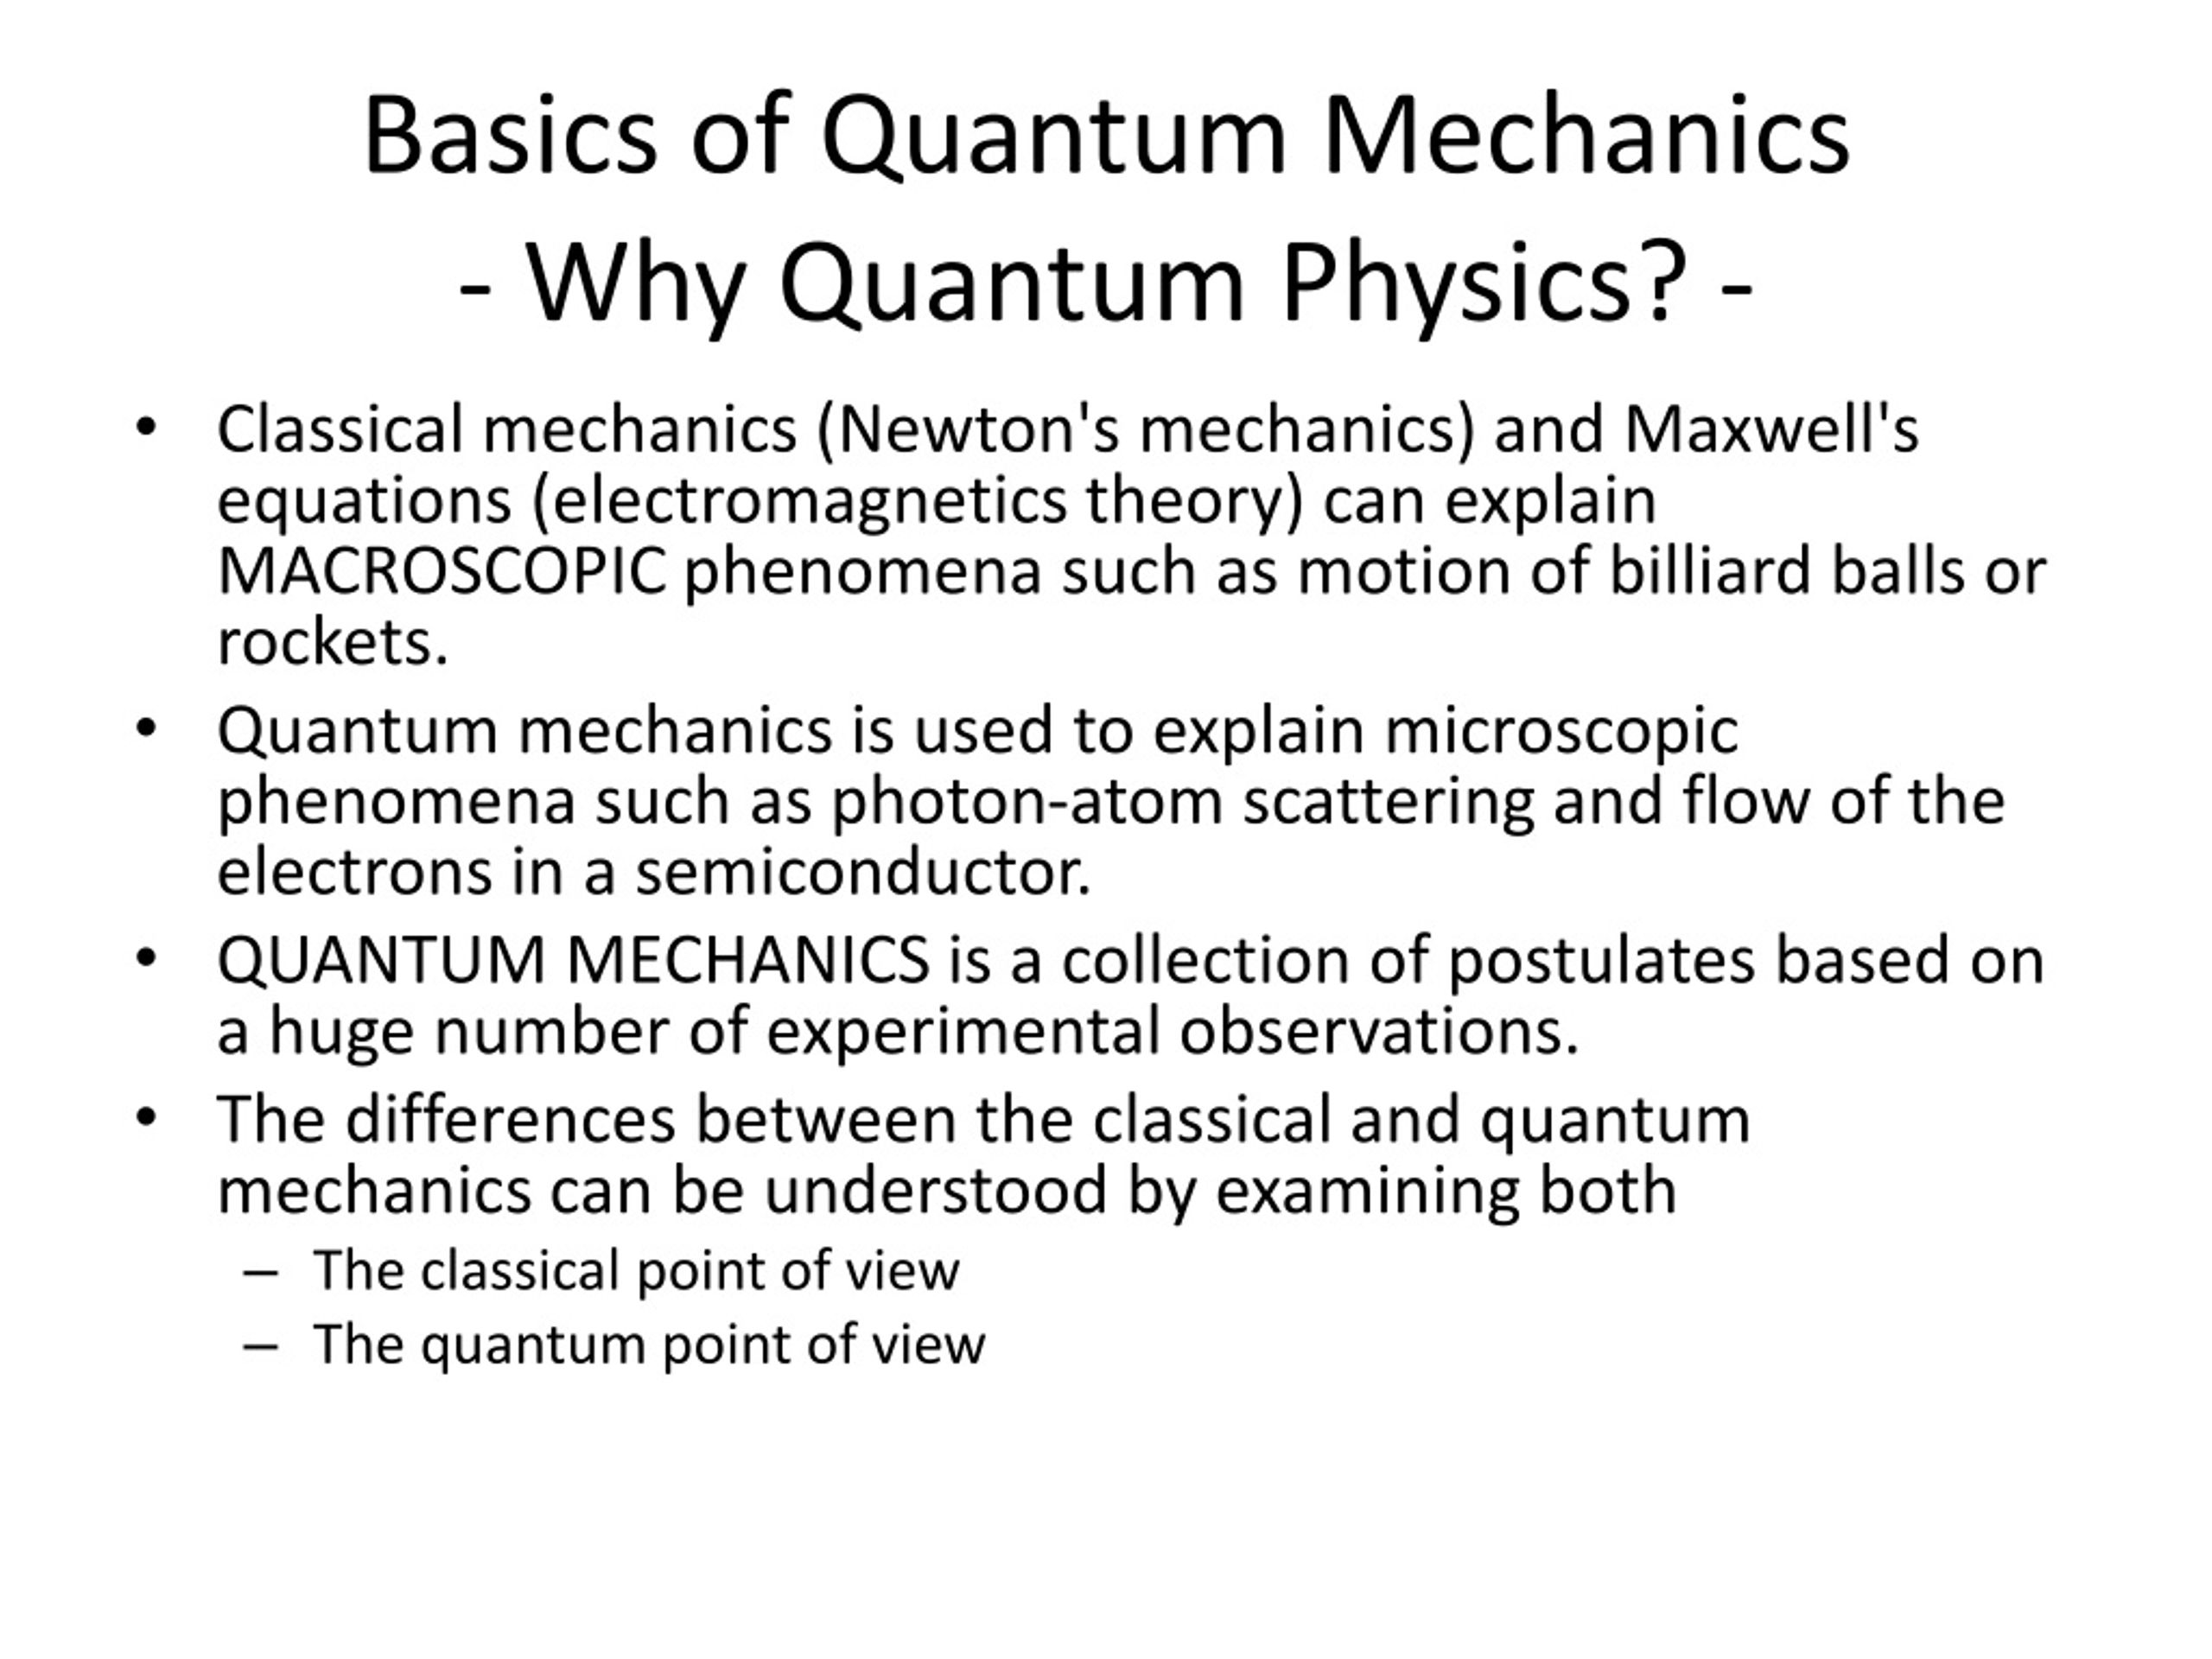 research work on quantum mechanics